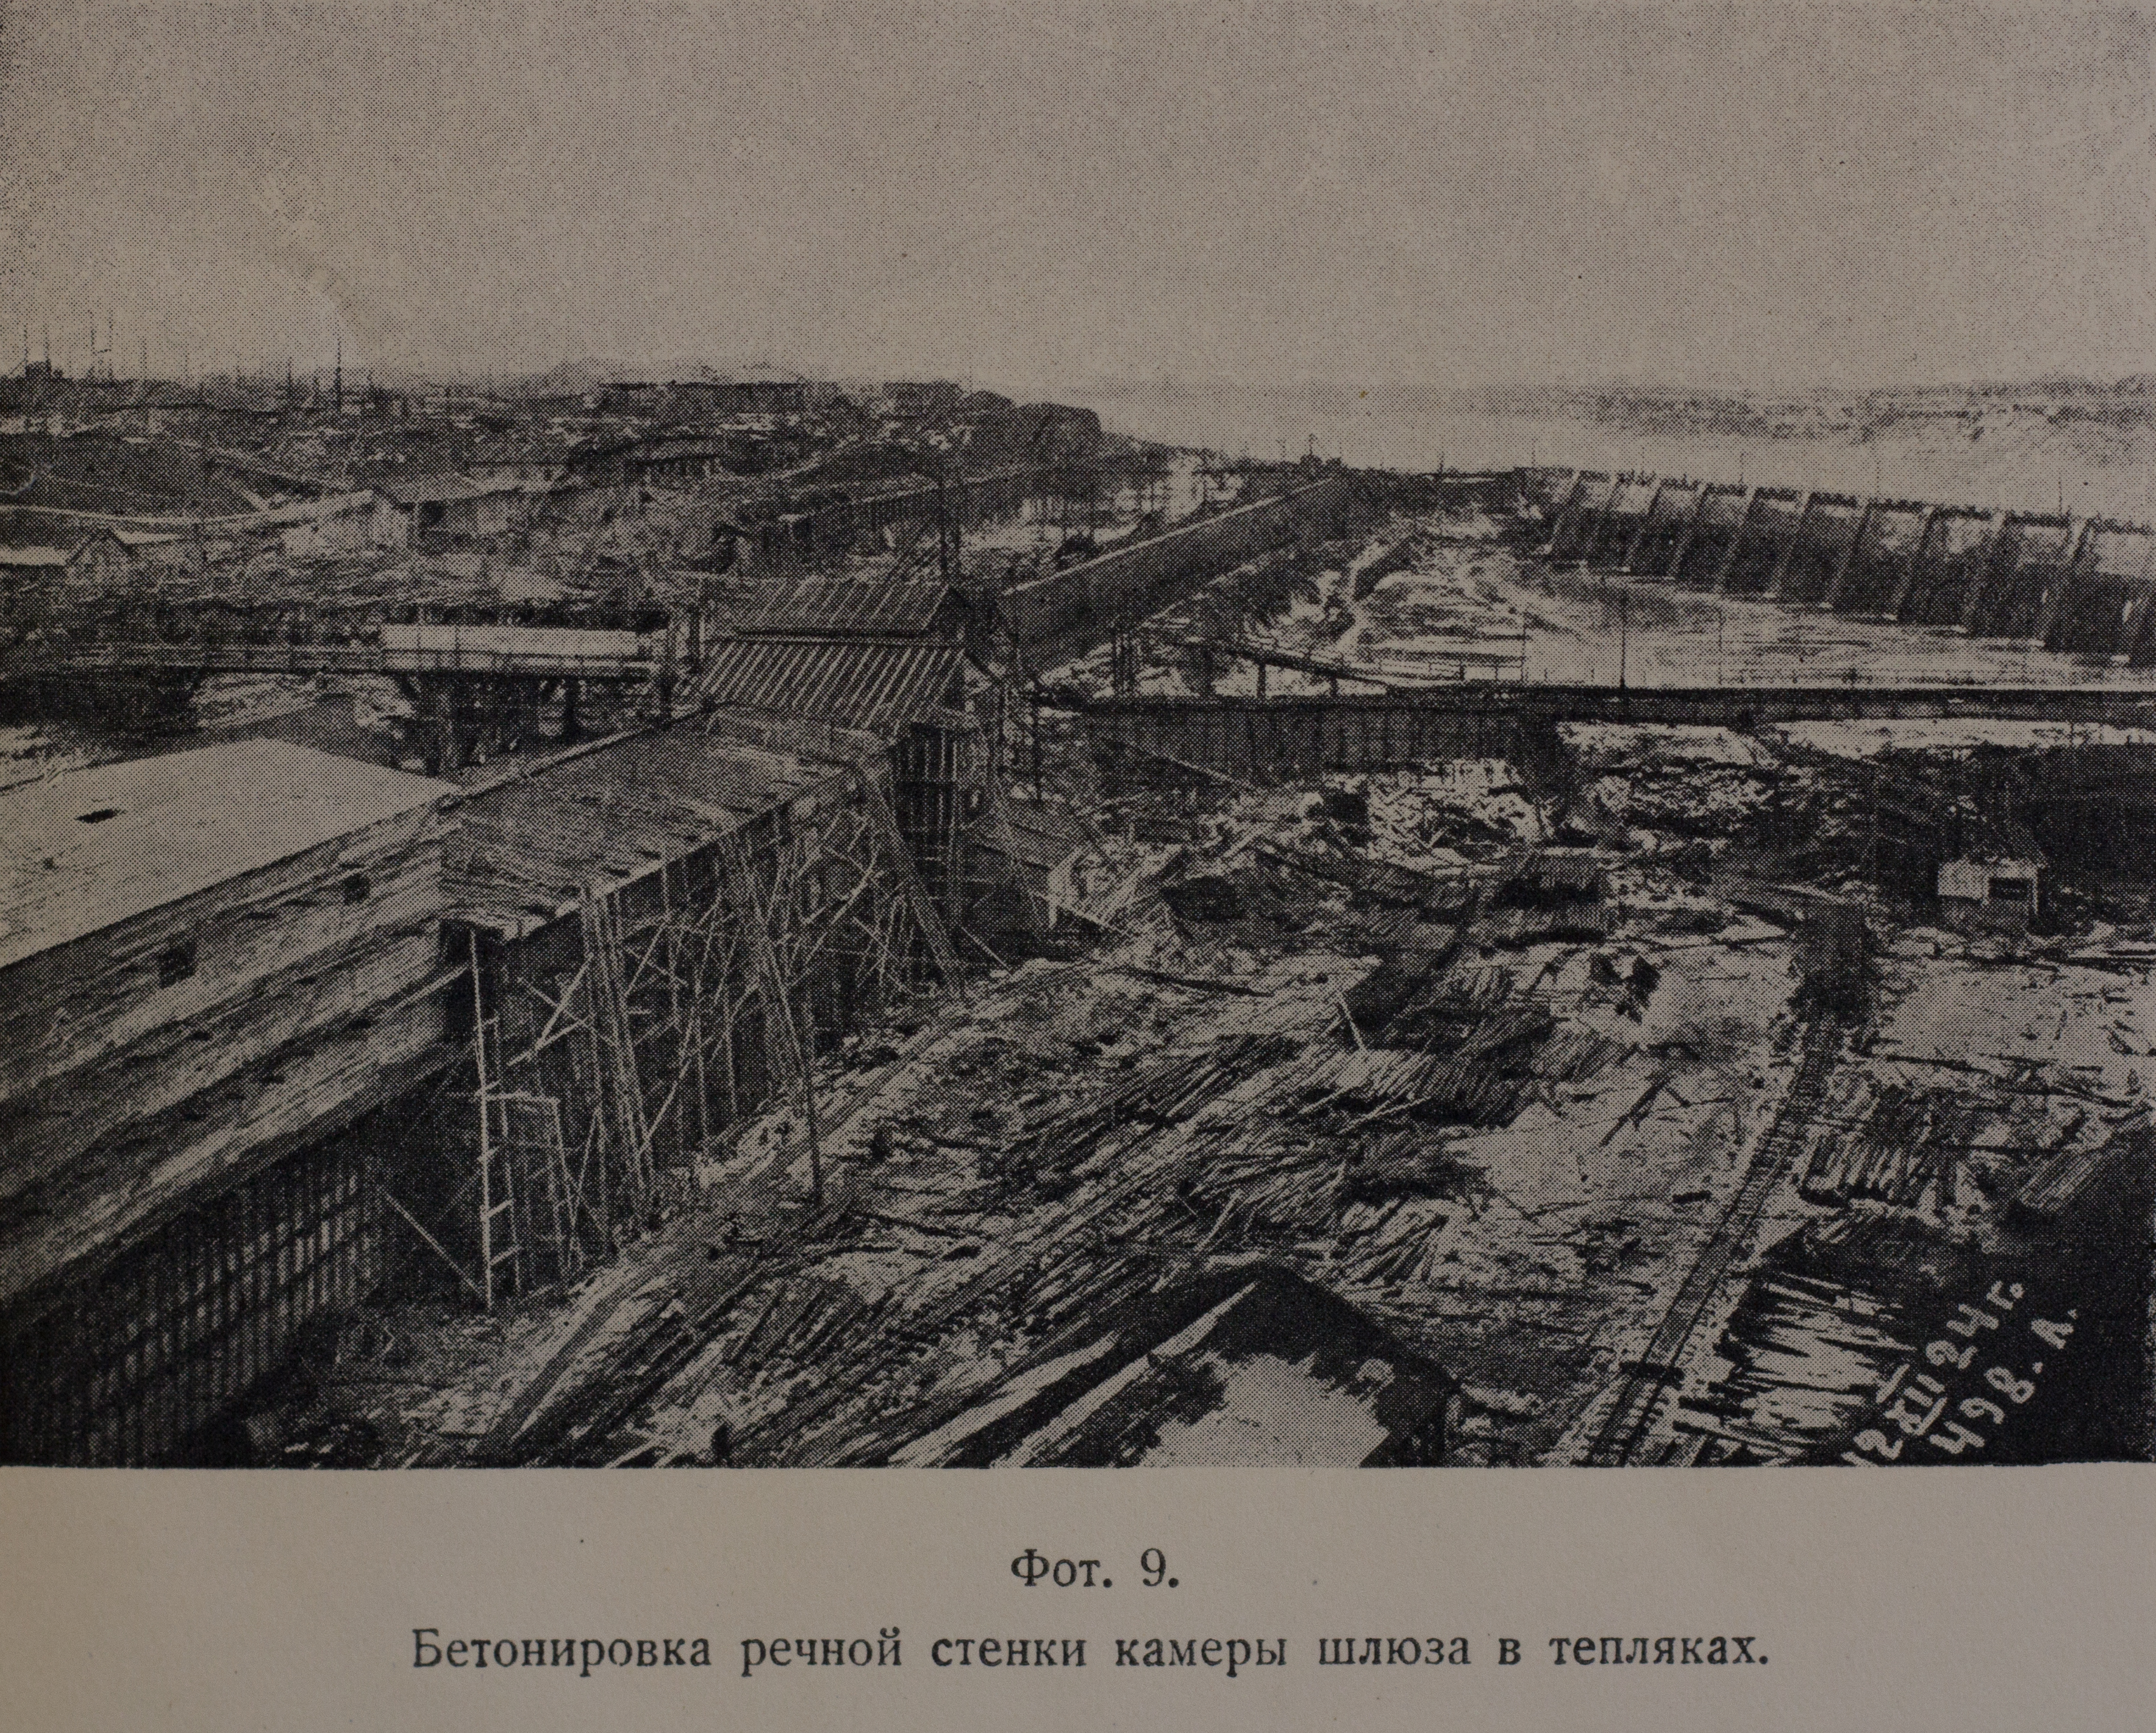 Бетонировка речной стенки камеры шлюза в тепляках (1924 г.)